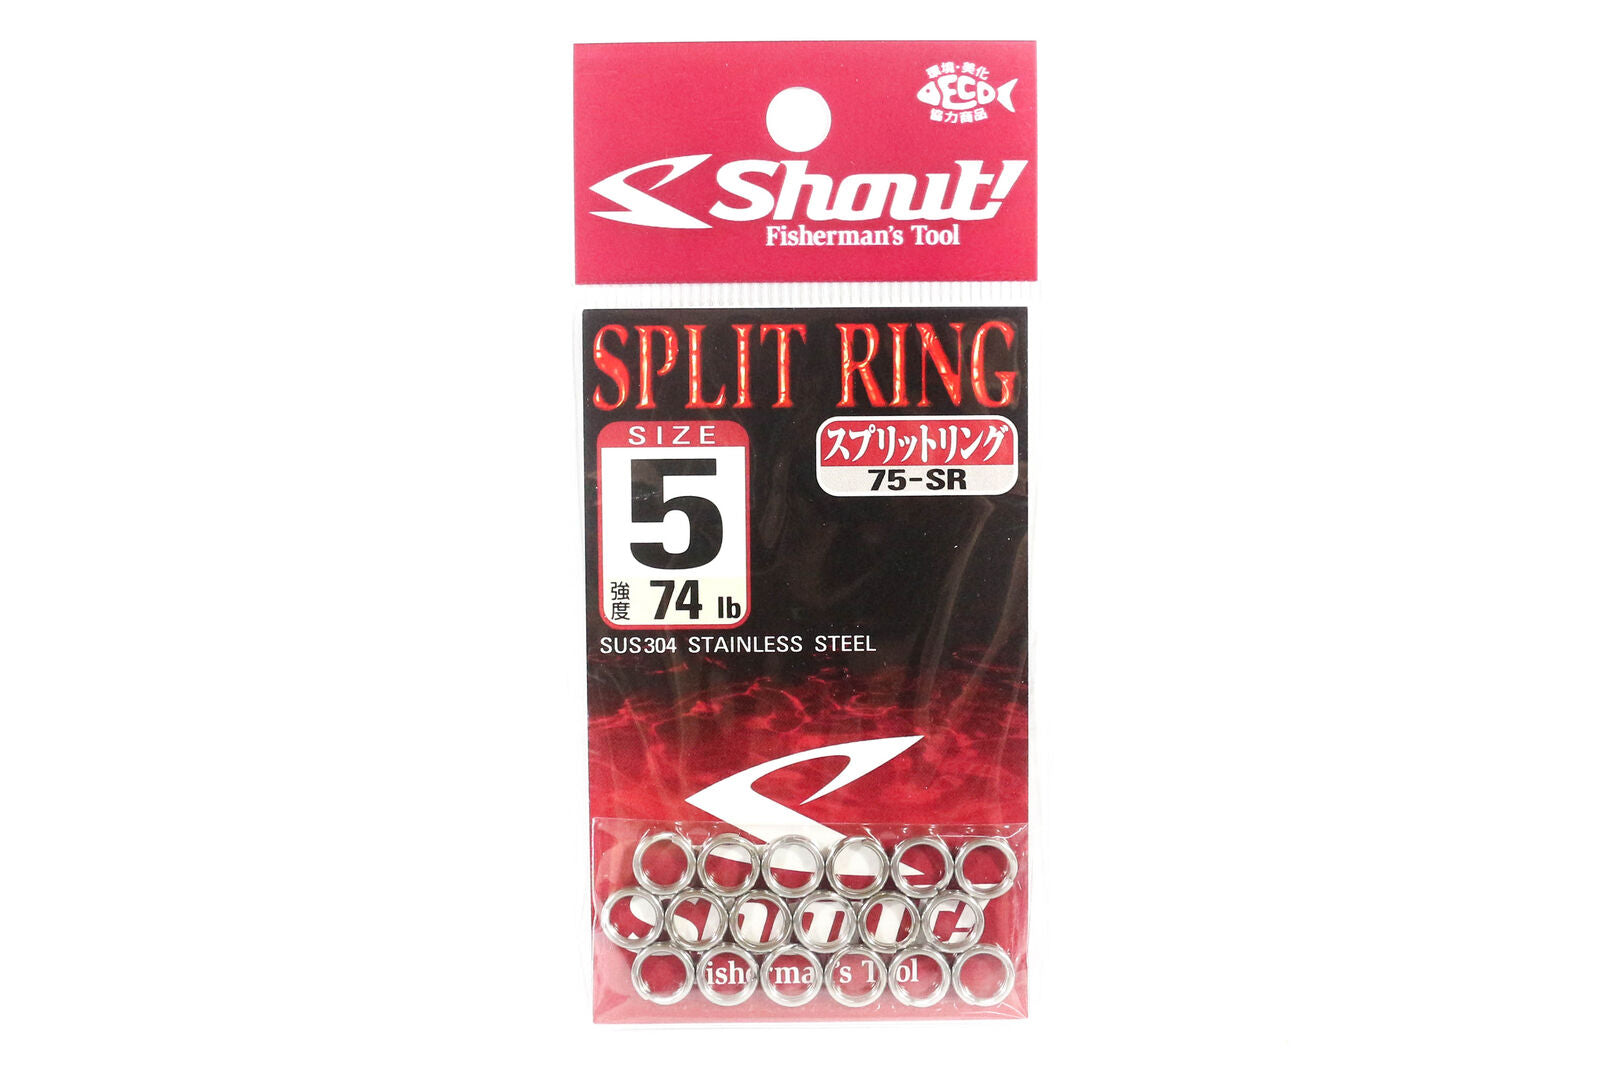 Shout 75-SR Split Ring  Stainless Steel split ring Size 5